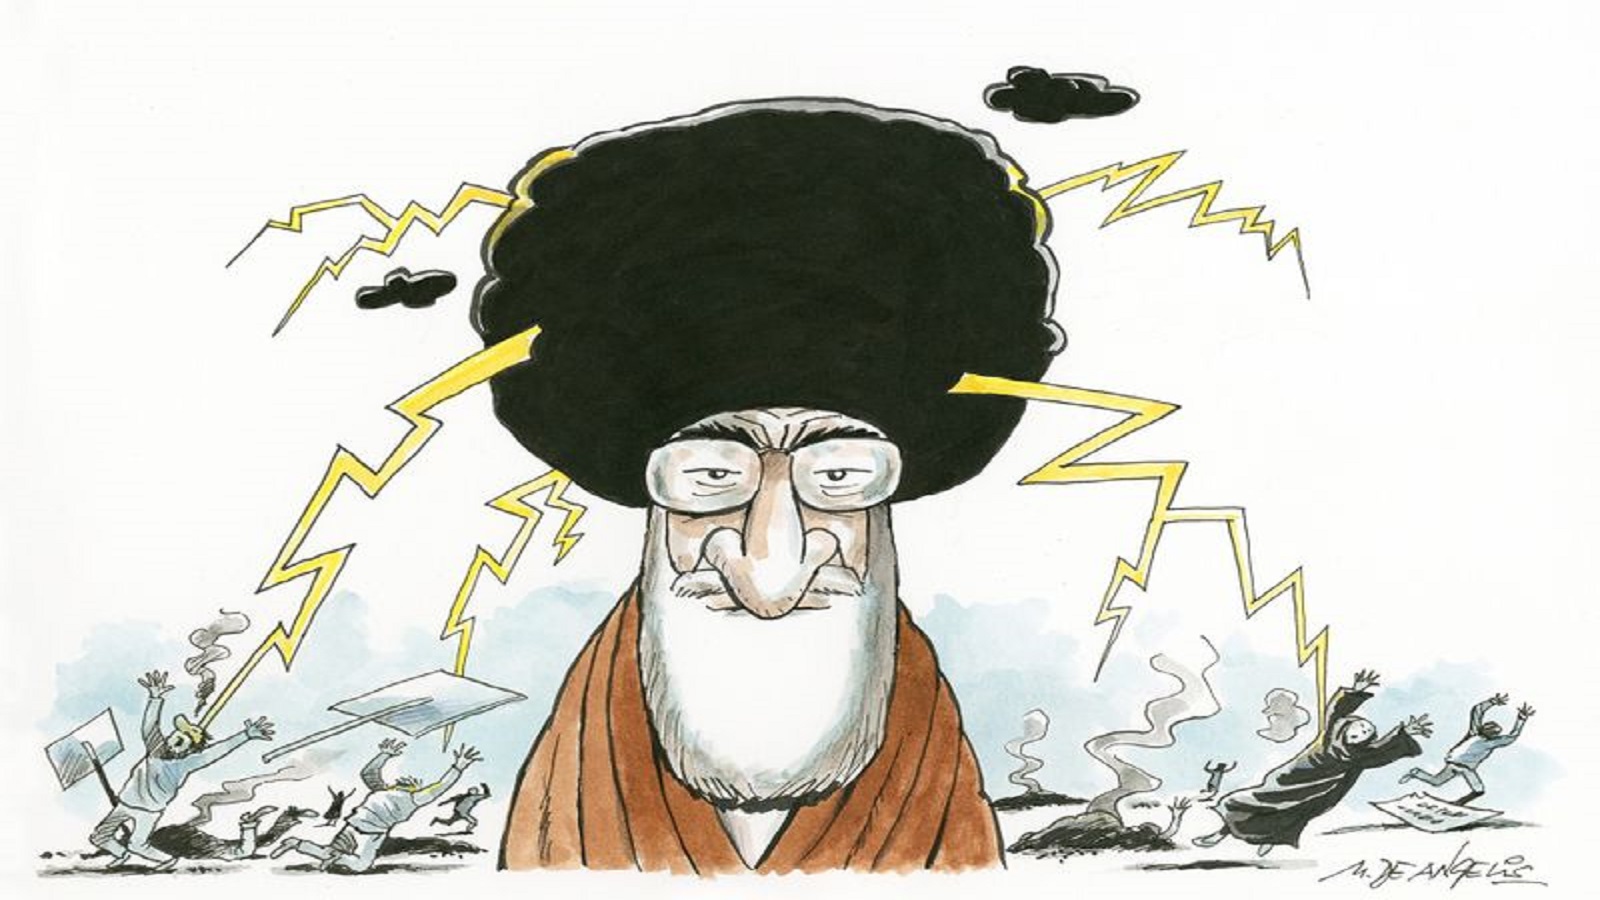 الرقابة اللبنانية تحذف كاريكاتور خامنئي من "كورييه انترناسيونال"!